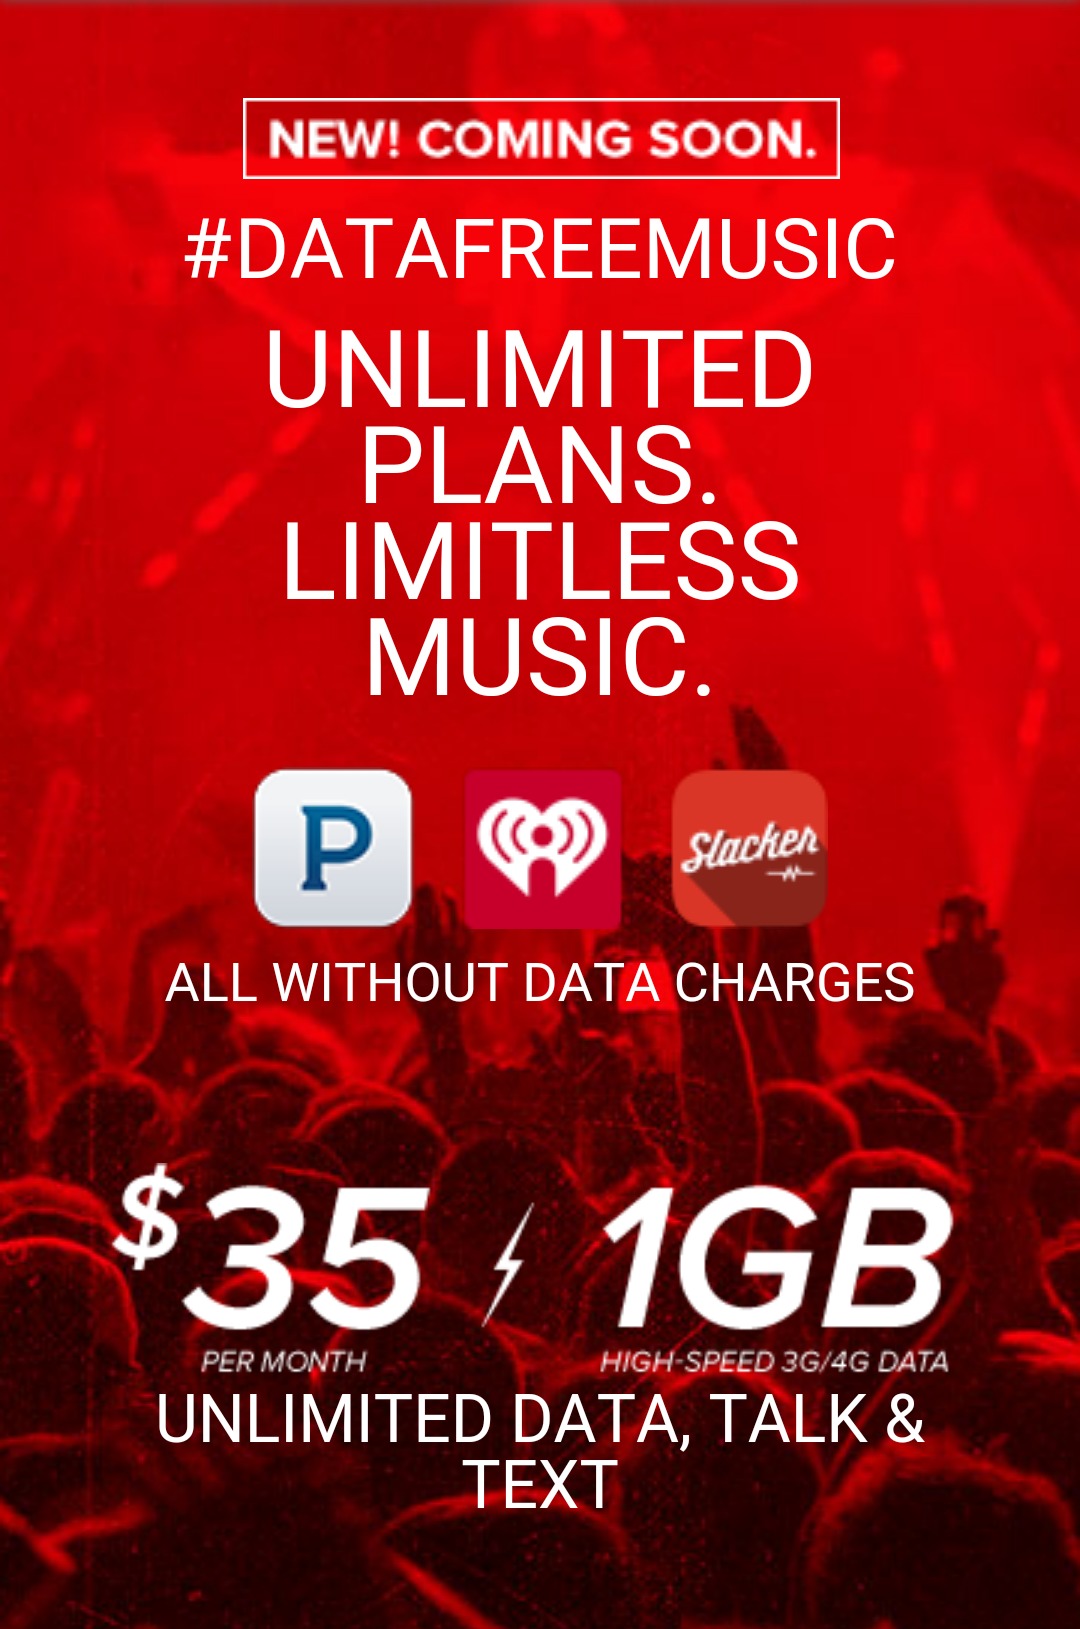 Virgin Mobile Data Free Music